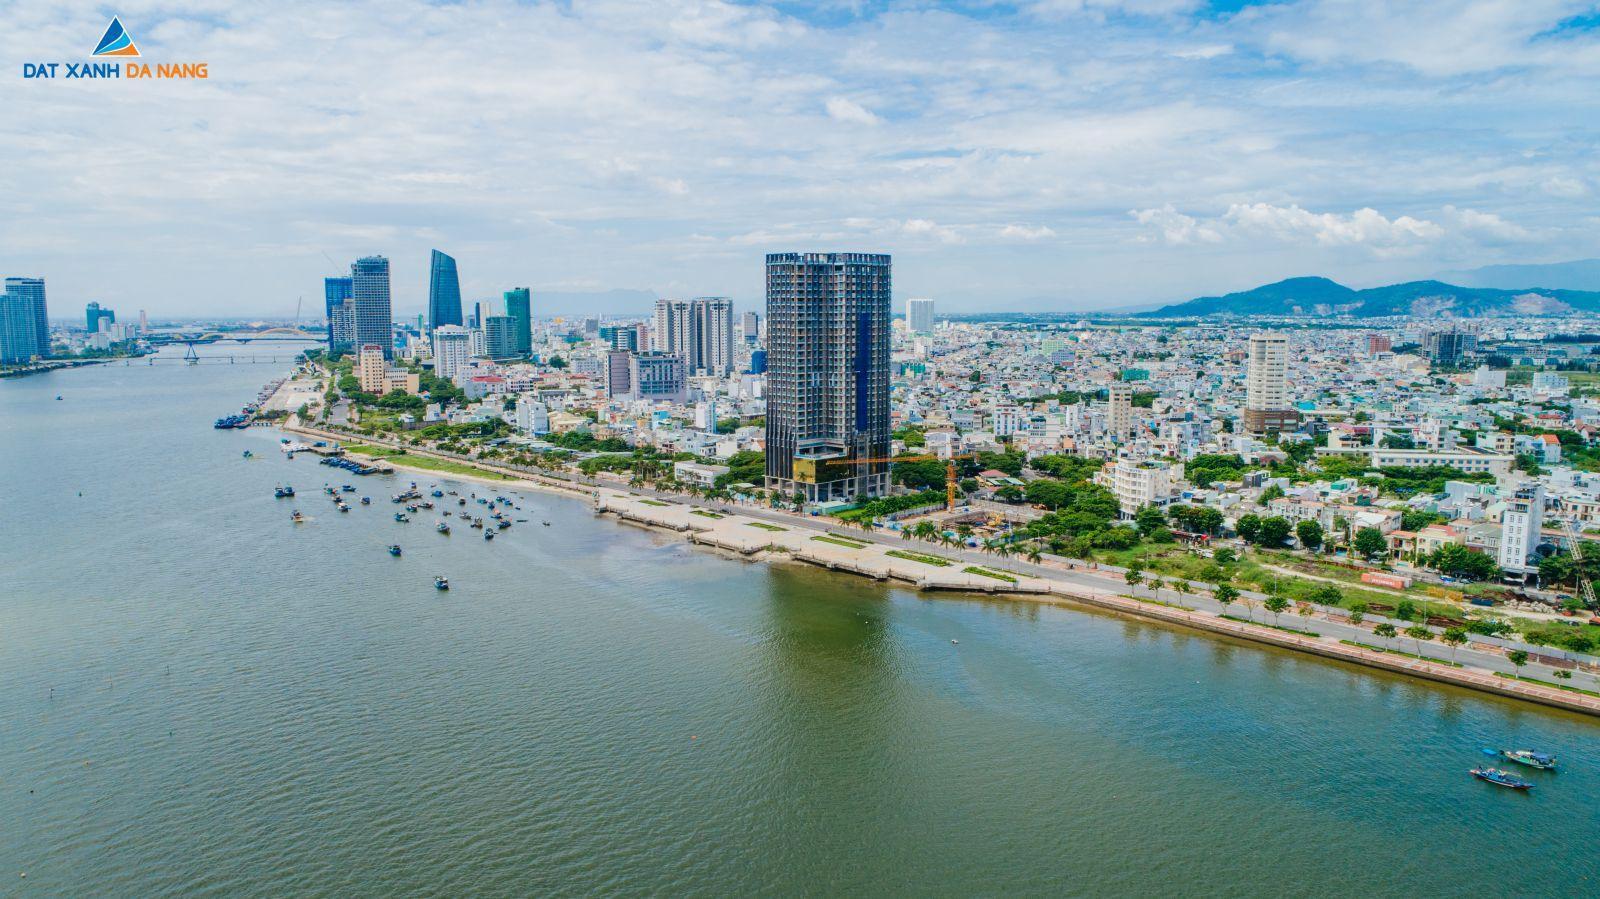 [GÓC CẬP NHẬT] DỰ ÁN MARINA COMPLEX THÁNG 09/2019 - Viet Nam Smart City